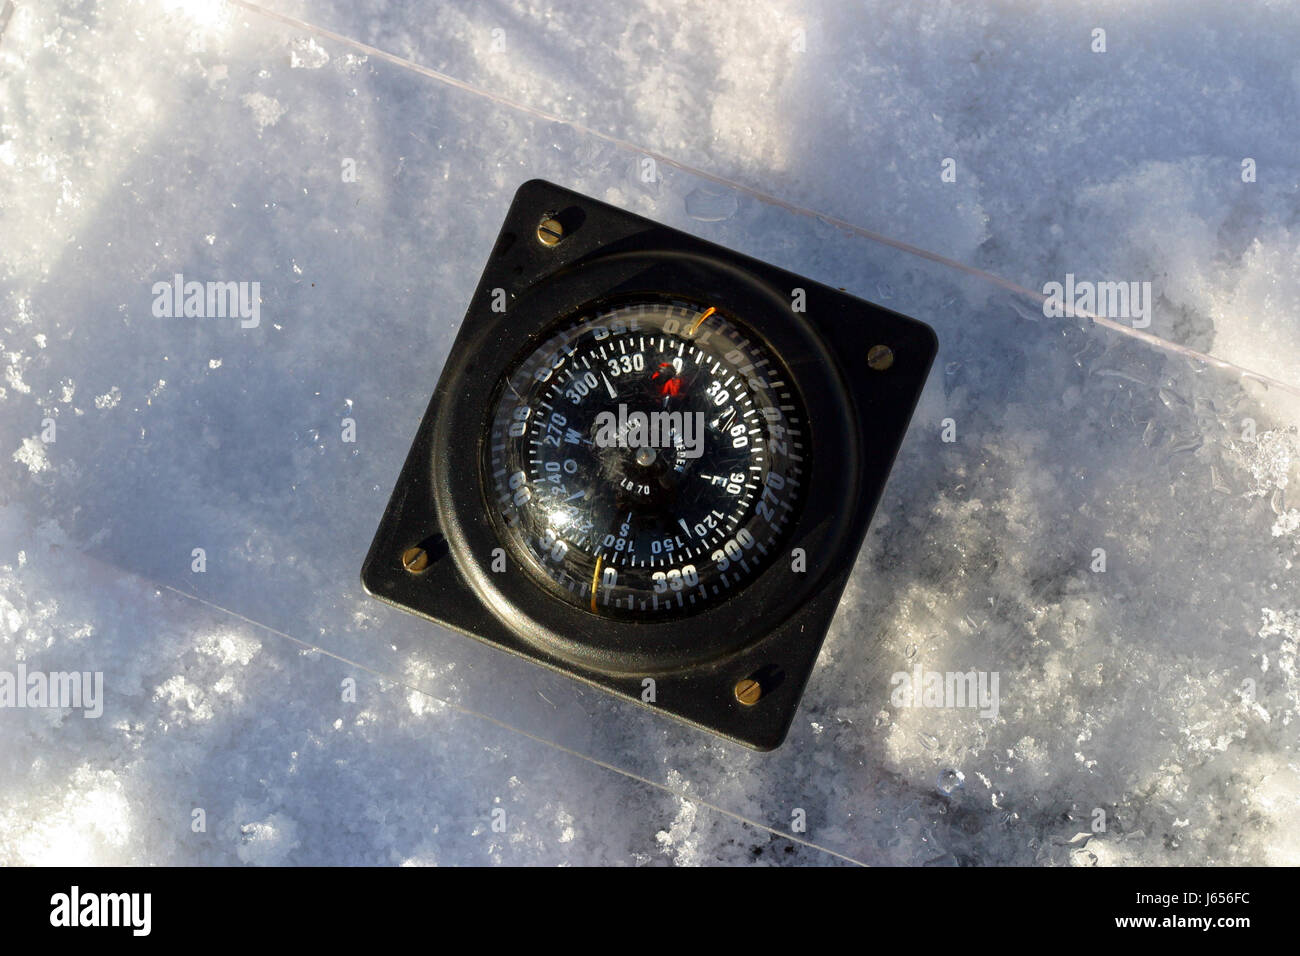 Tauchen, Orientierung, Instrumente, Kompass, Winter, Kälte, Eis, Schnee Stockfoto